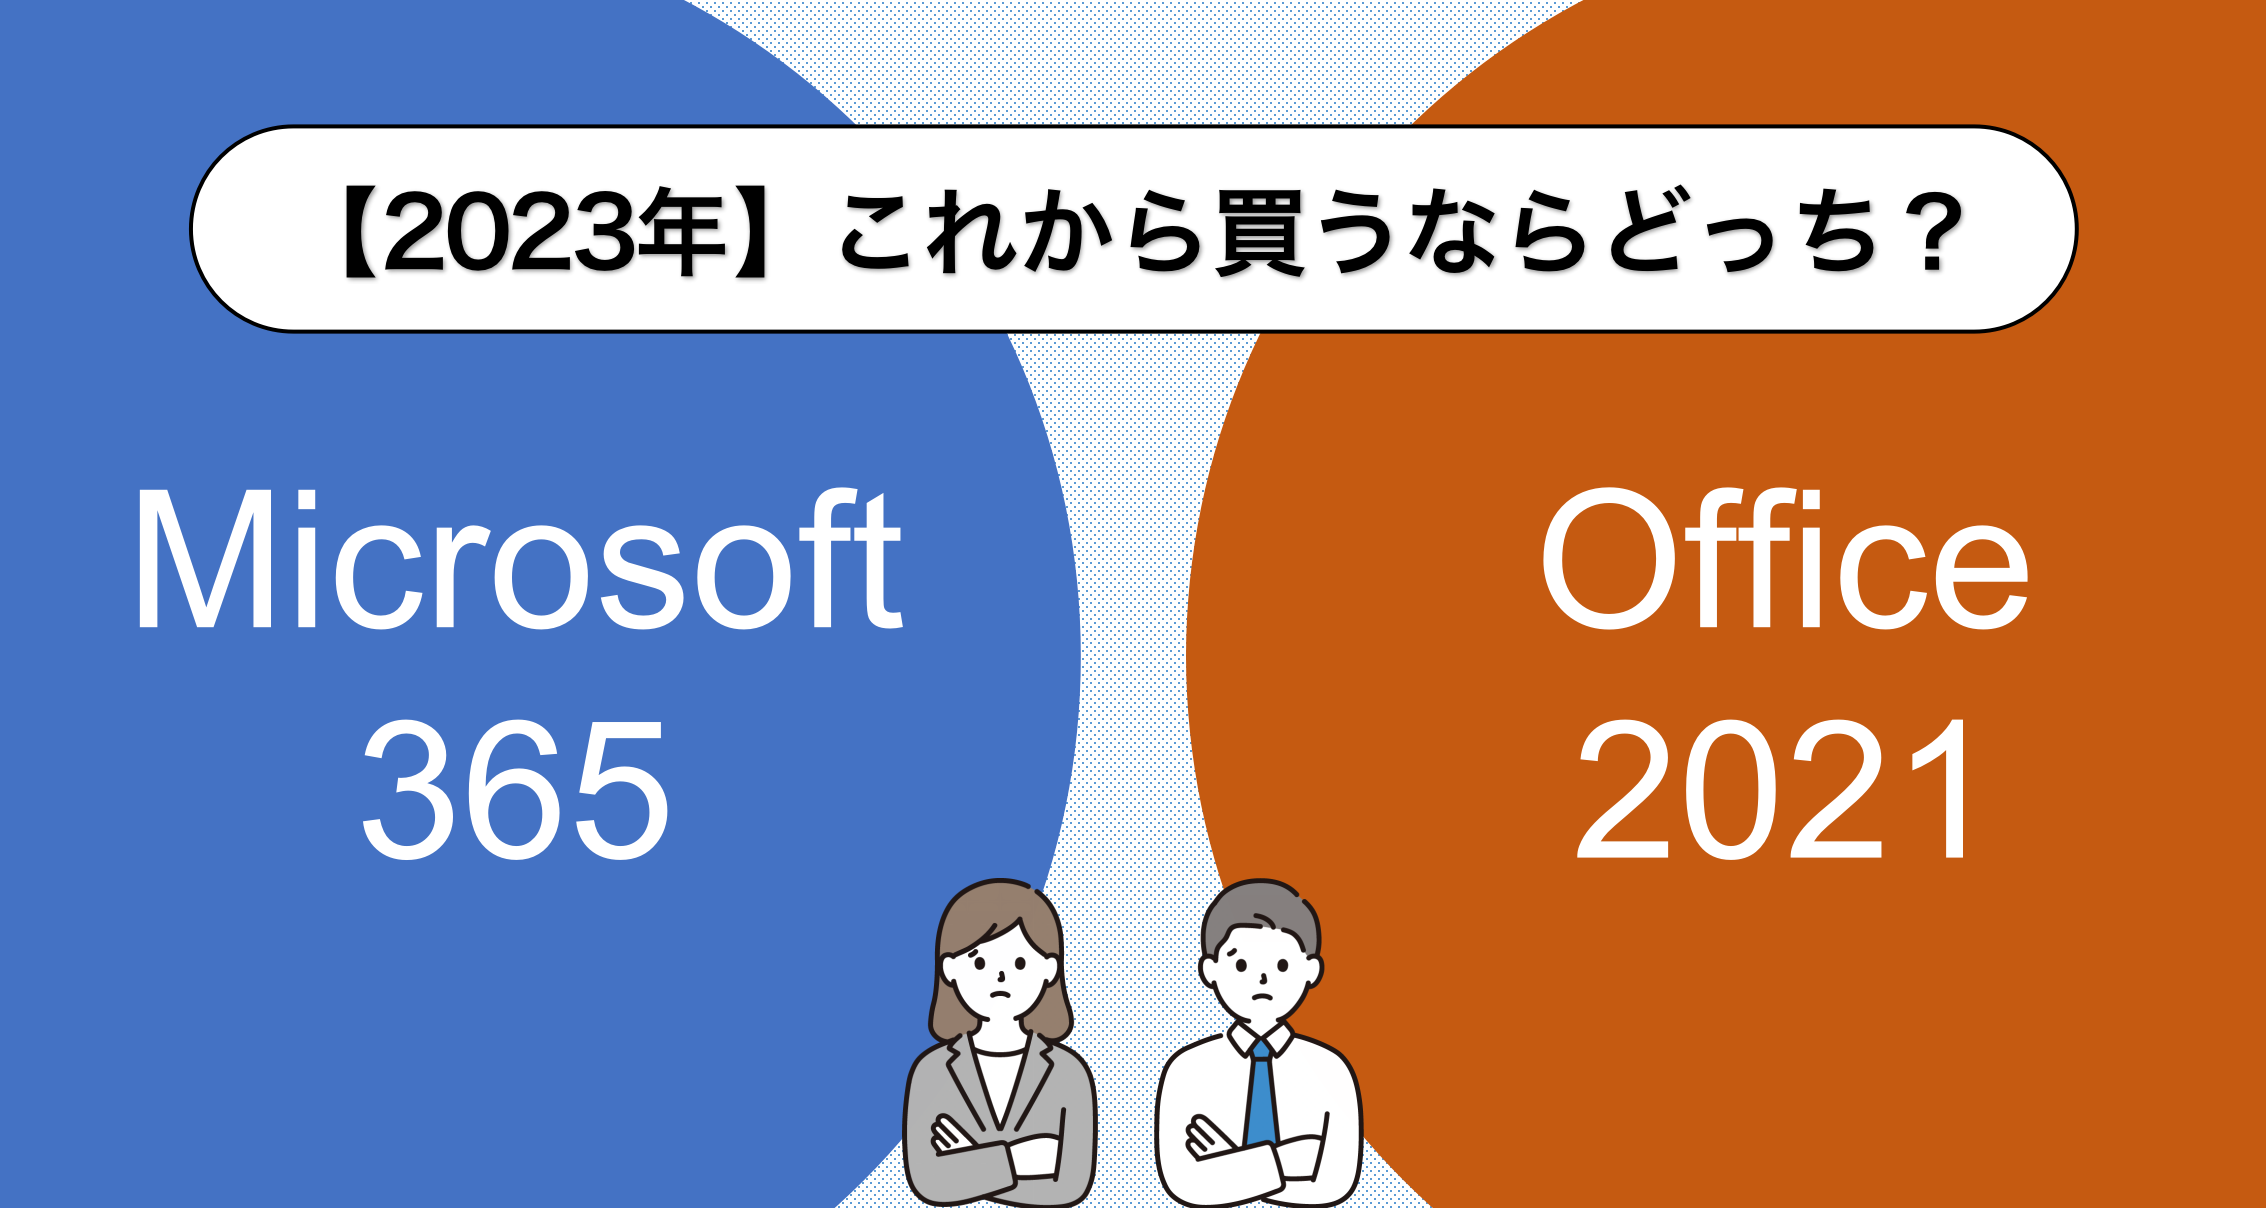 2023年】Microsoft 365とOffice 2021、いま買うならどっちがおすすめ